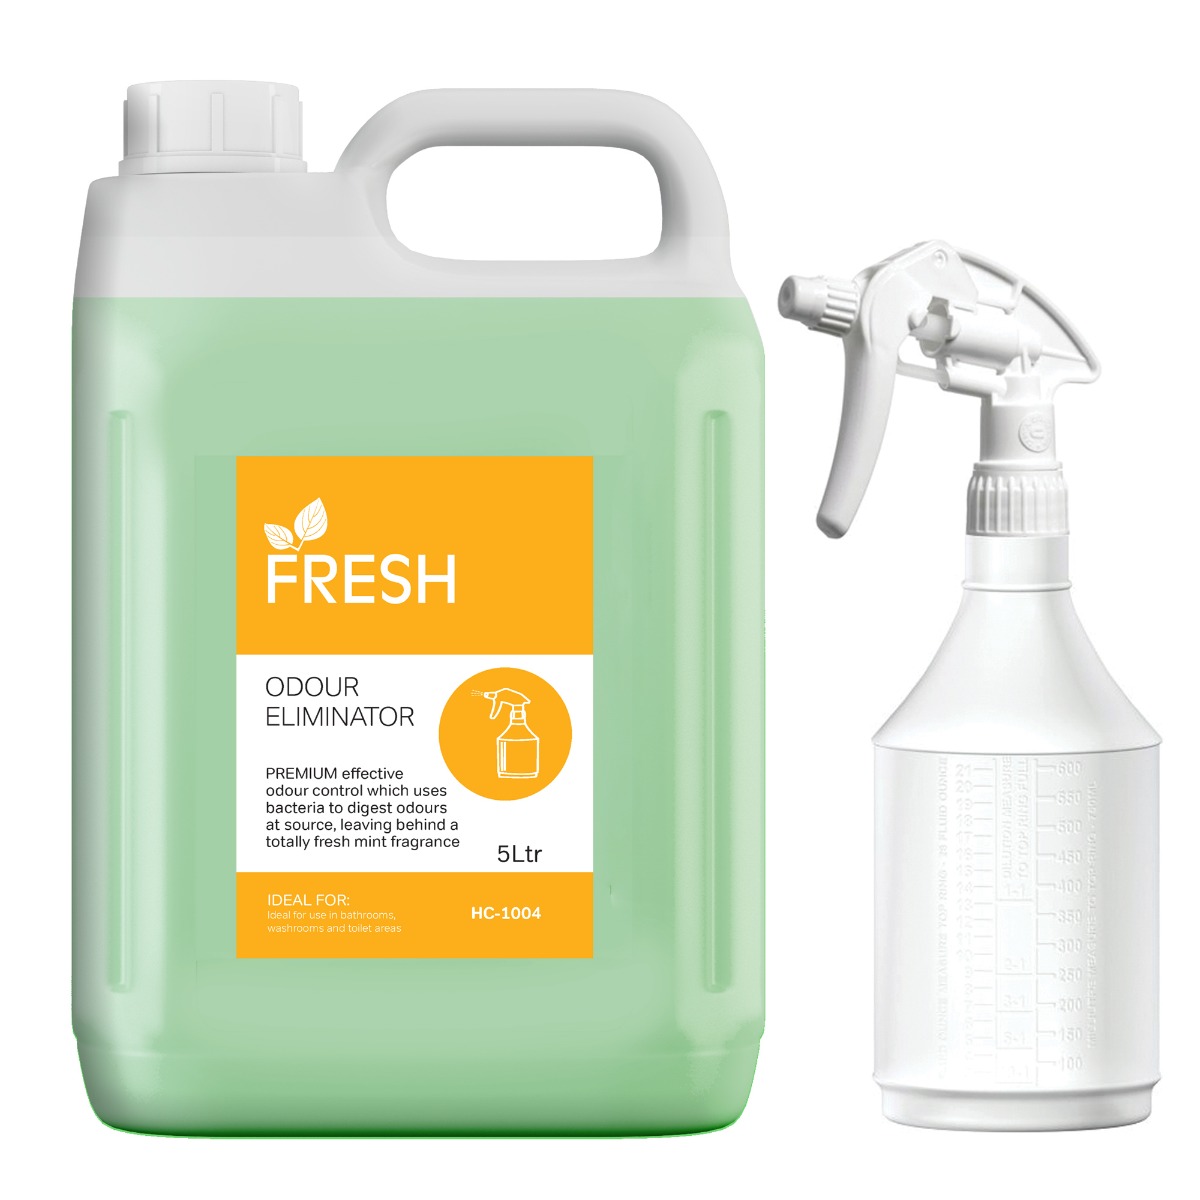 Fresh Trigger Bottle And Label For Odour Eliminator Air Freshener - Each